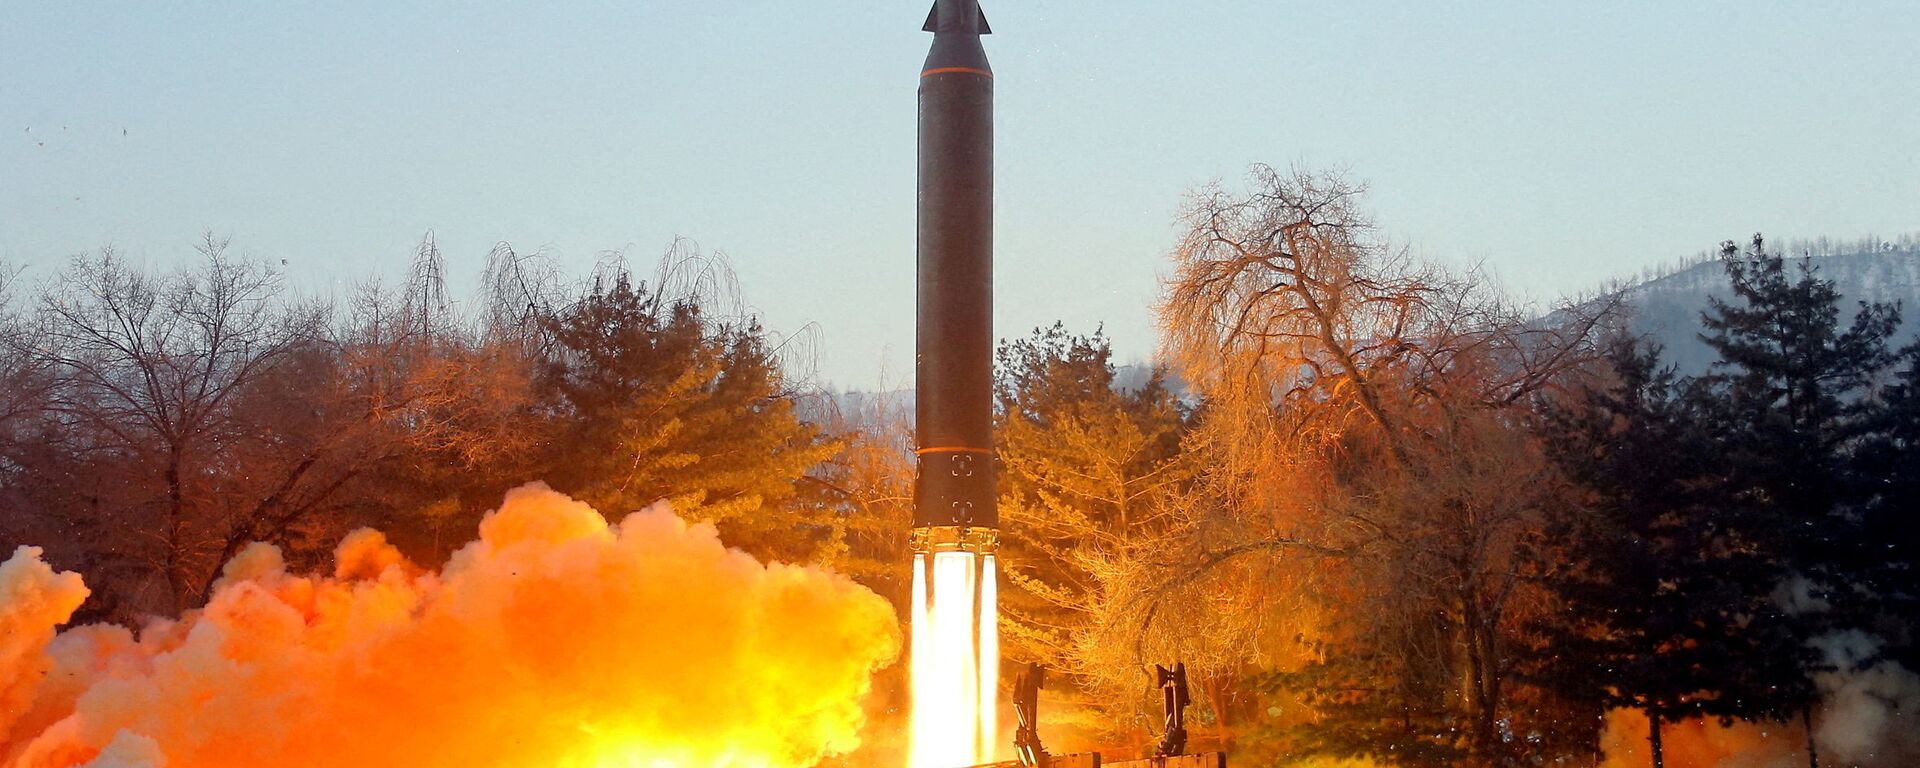 اختبار إطلاق صاروخ تفوق سرعته سرعة الصوت في كوريا الشمالية، 11 يناير 2022  - سبوتنيك عربي, 1920, 28.02.2022